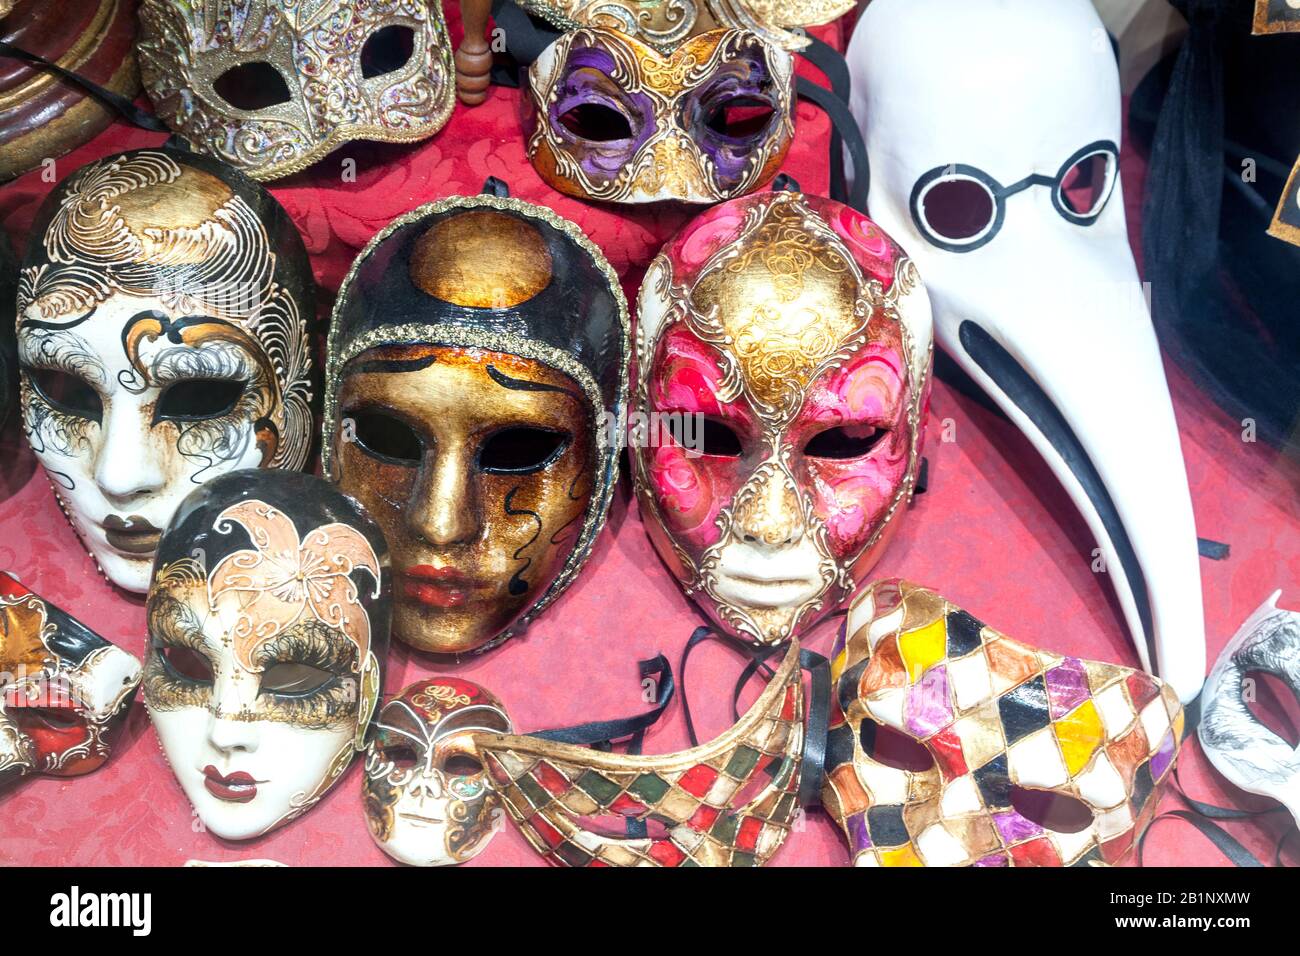 meravigliosa maschera ornata per il carnevale Foto Stock